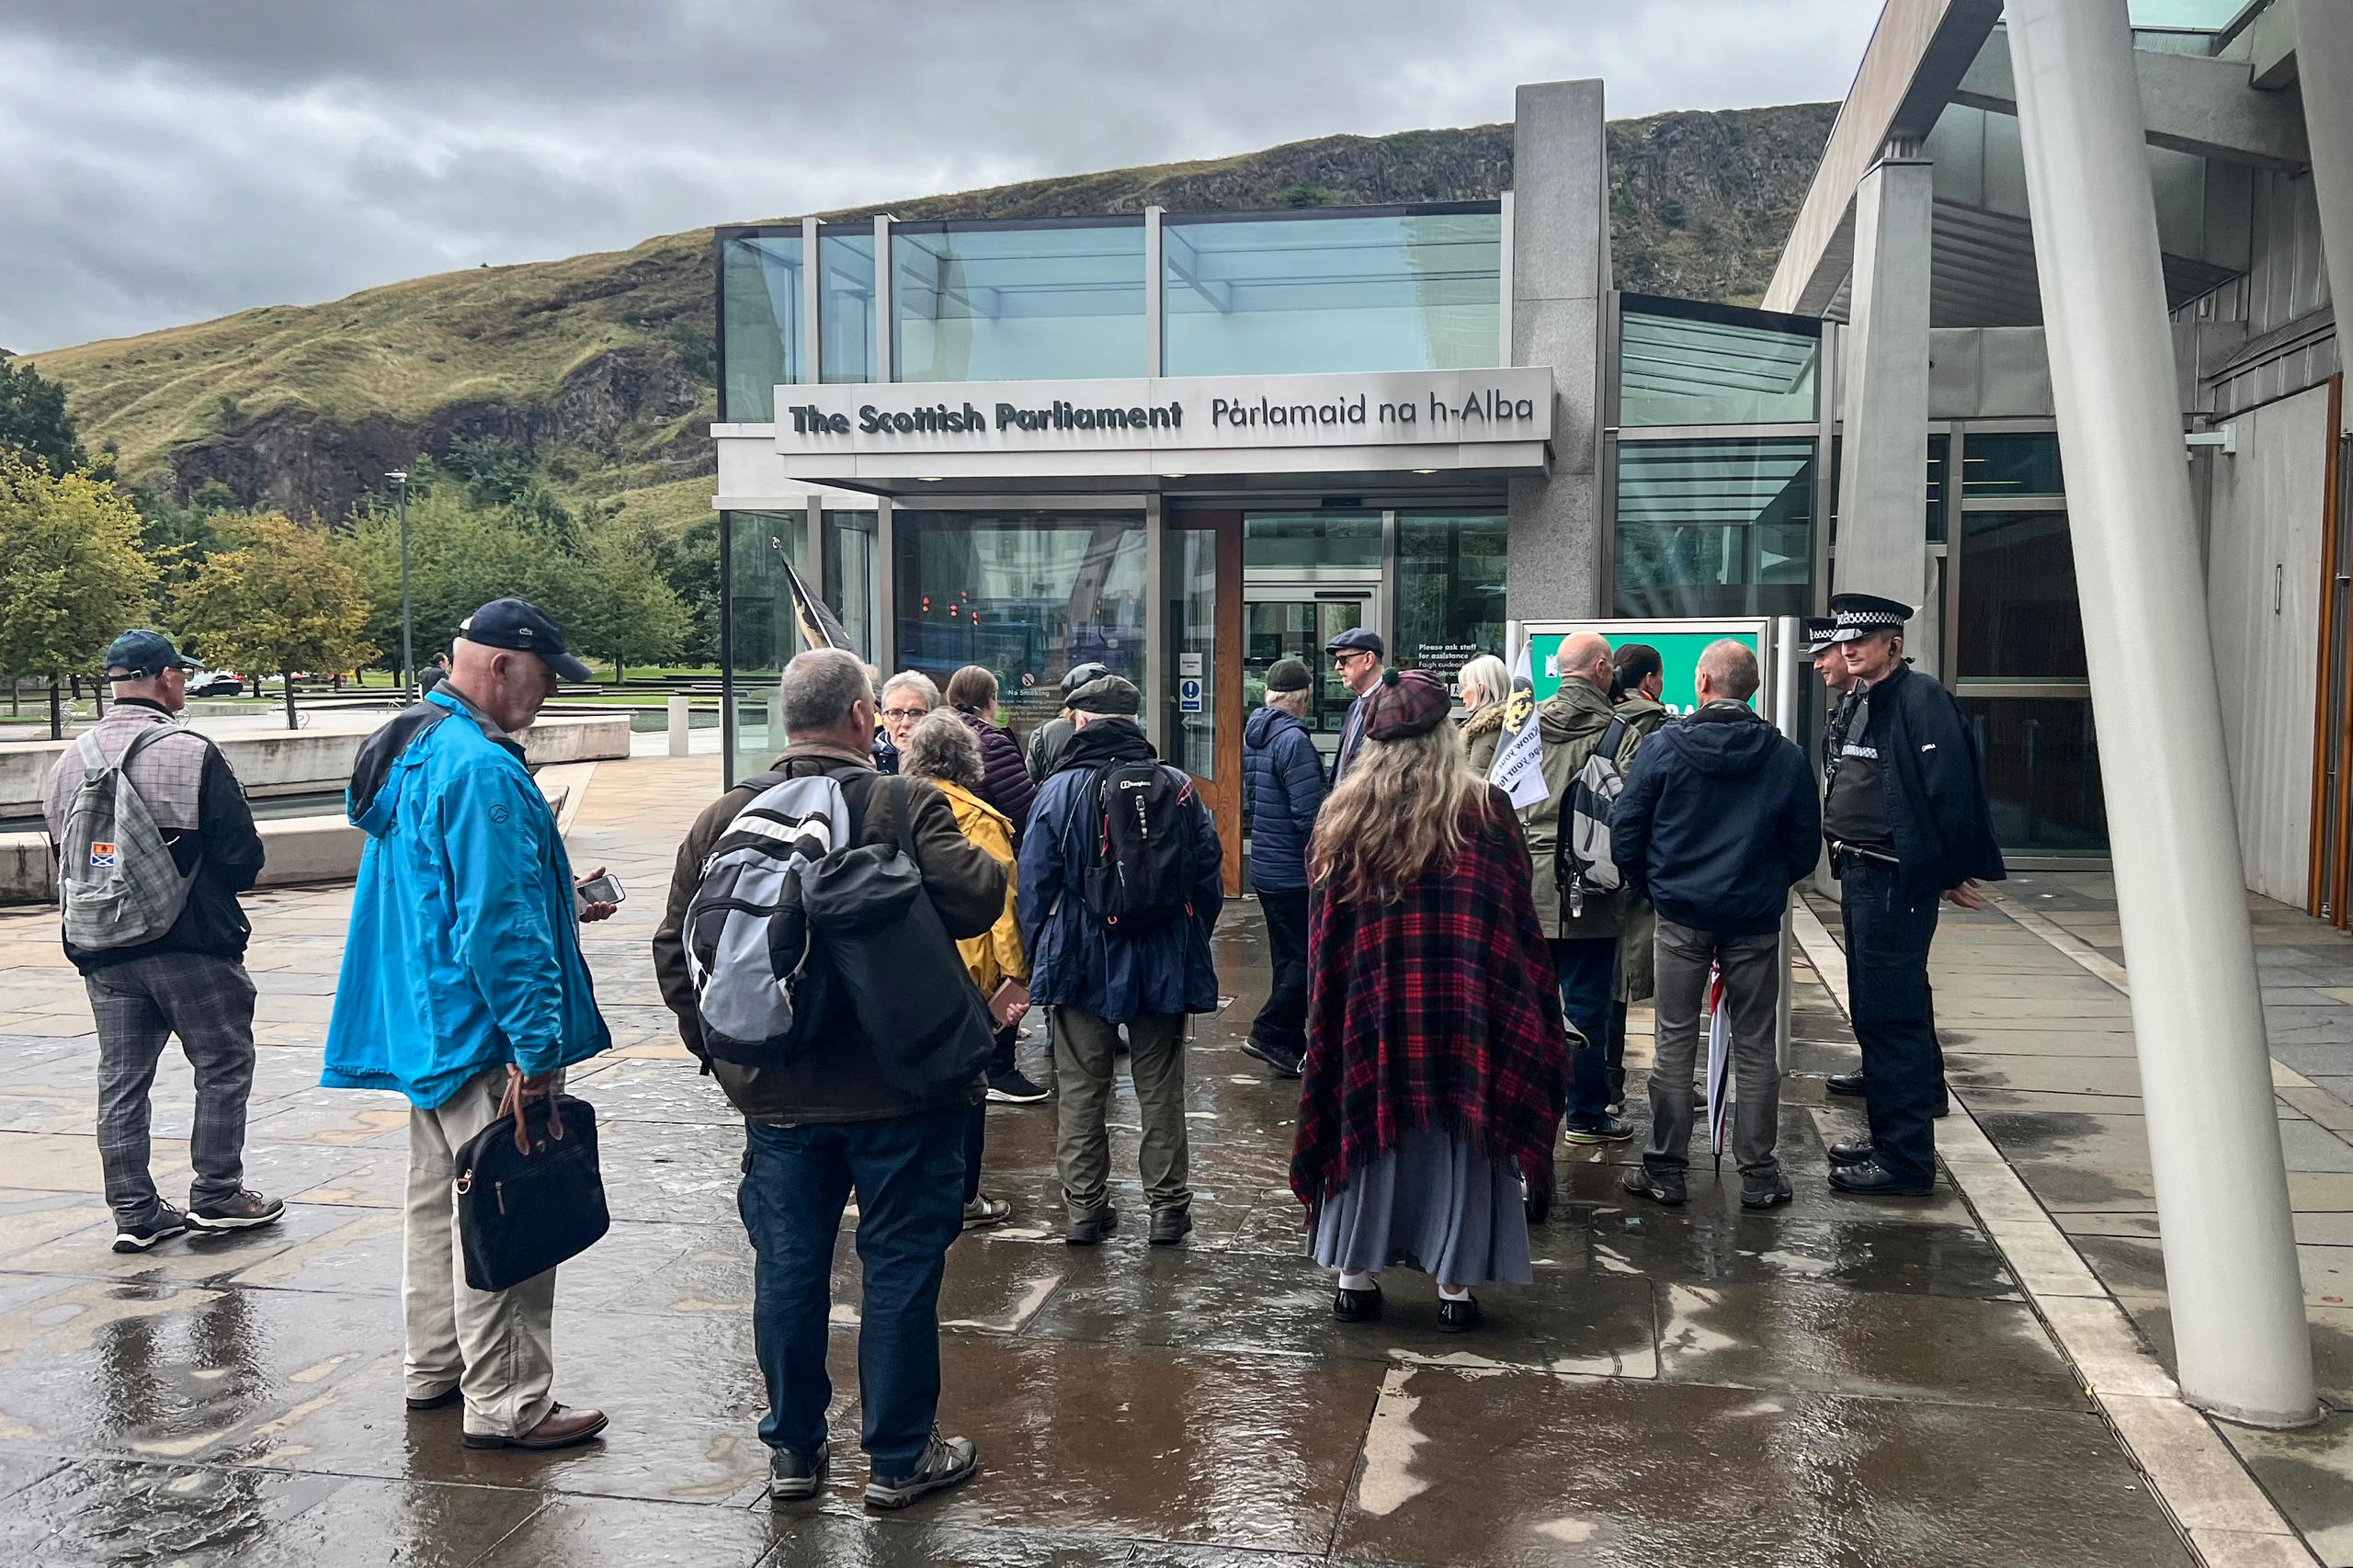 El Parlamento Escocés en Edimburgo y un grupo de personas bajo la lluvia.